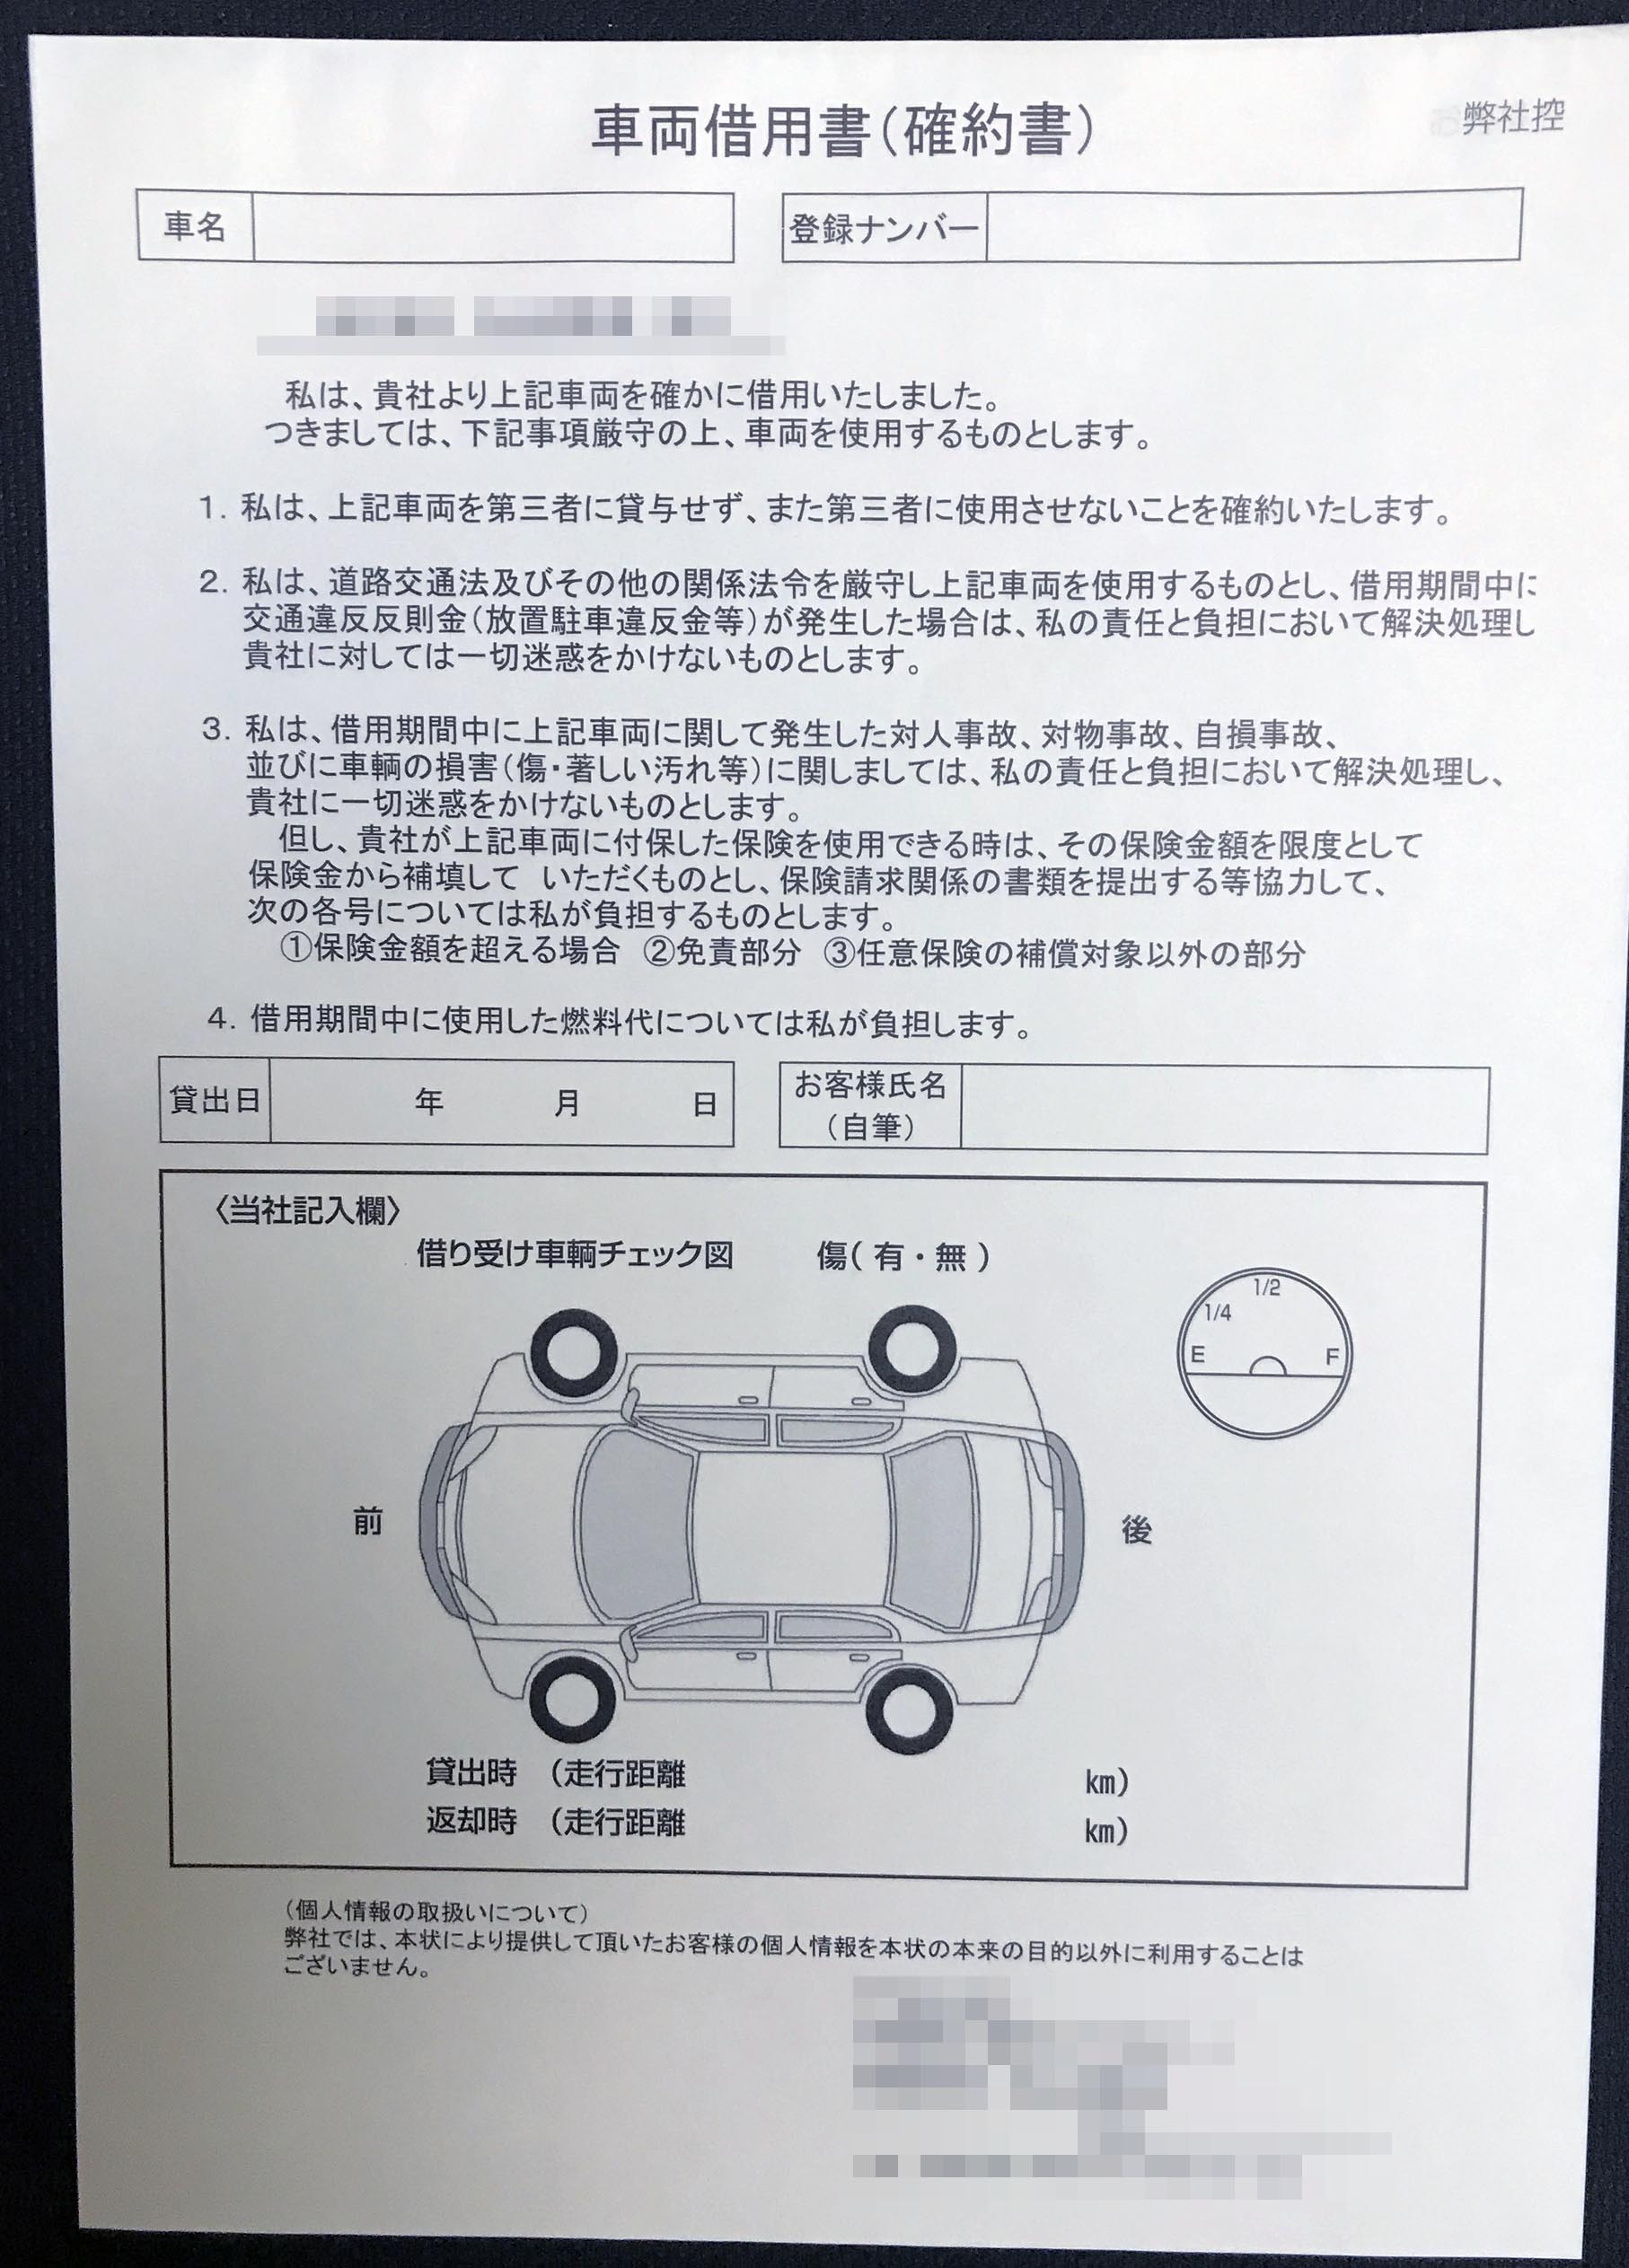 埼玉県　自動車整備業　代車貸出書　(２枚複写)